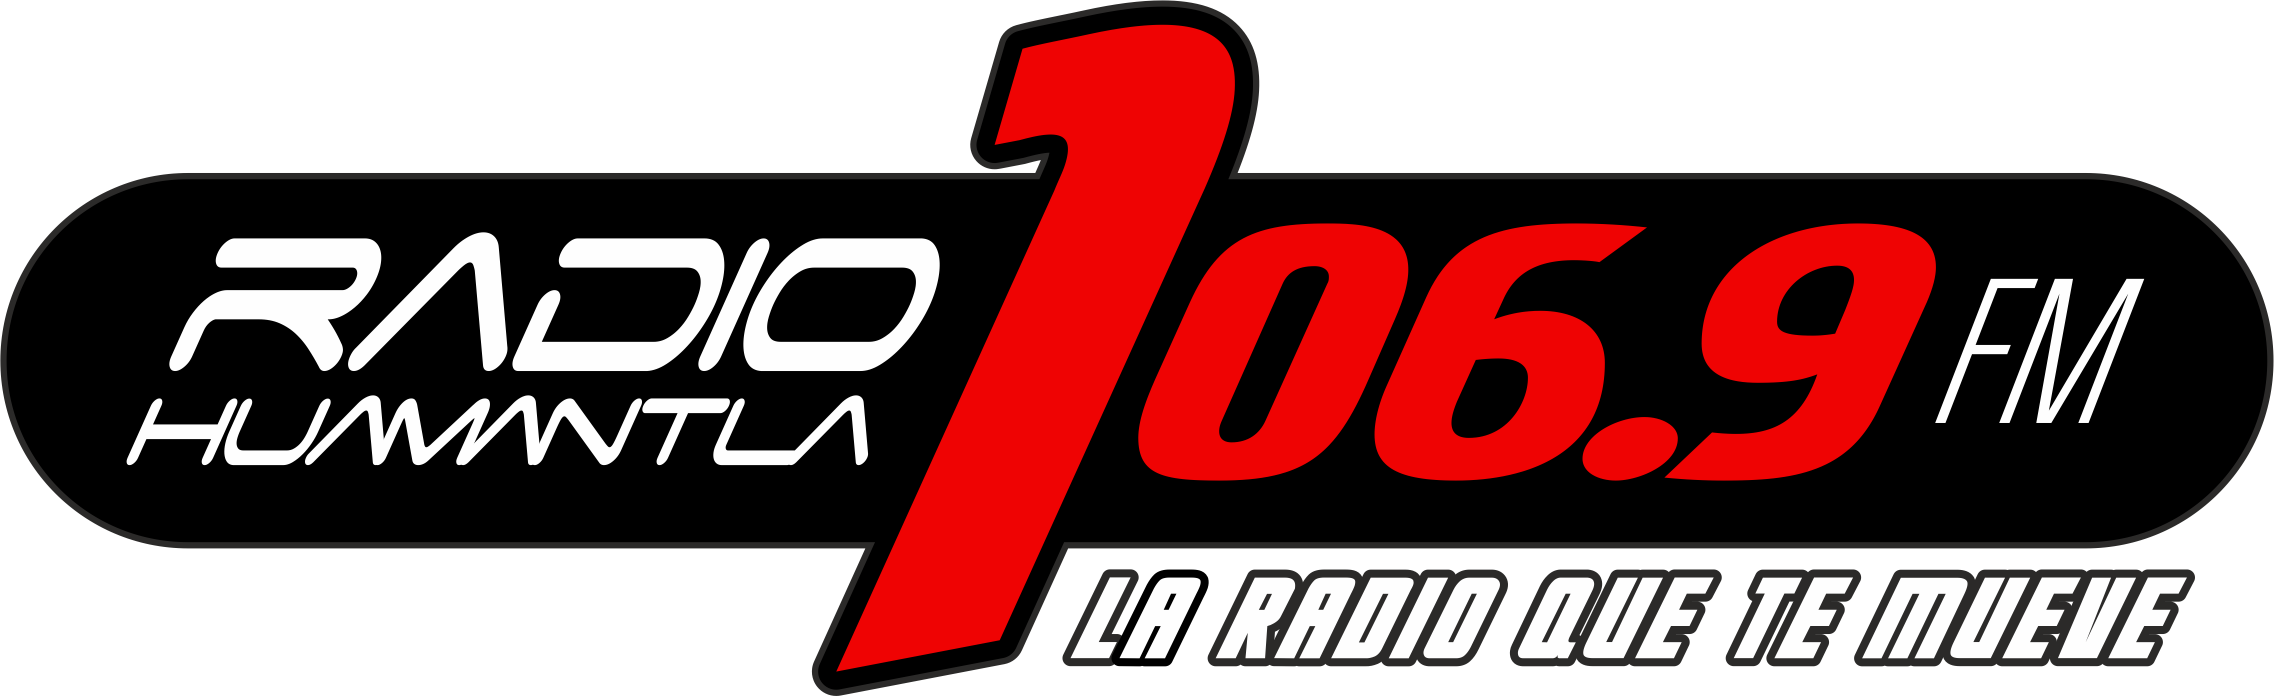 Radio Huamantla (Huamantla) - 106.9 FM - XHHT-FM - Radio Huamantla - Huamantla, Tlaxcala